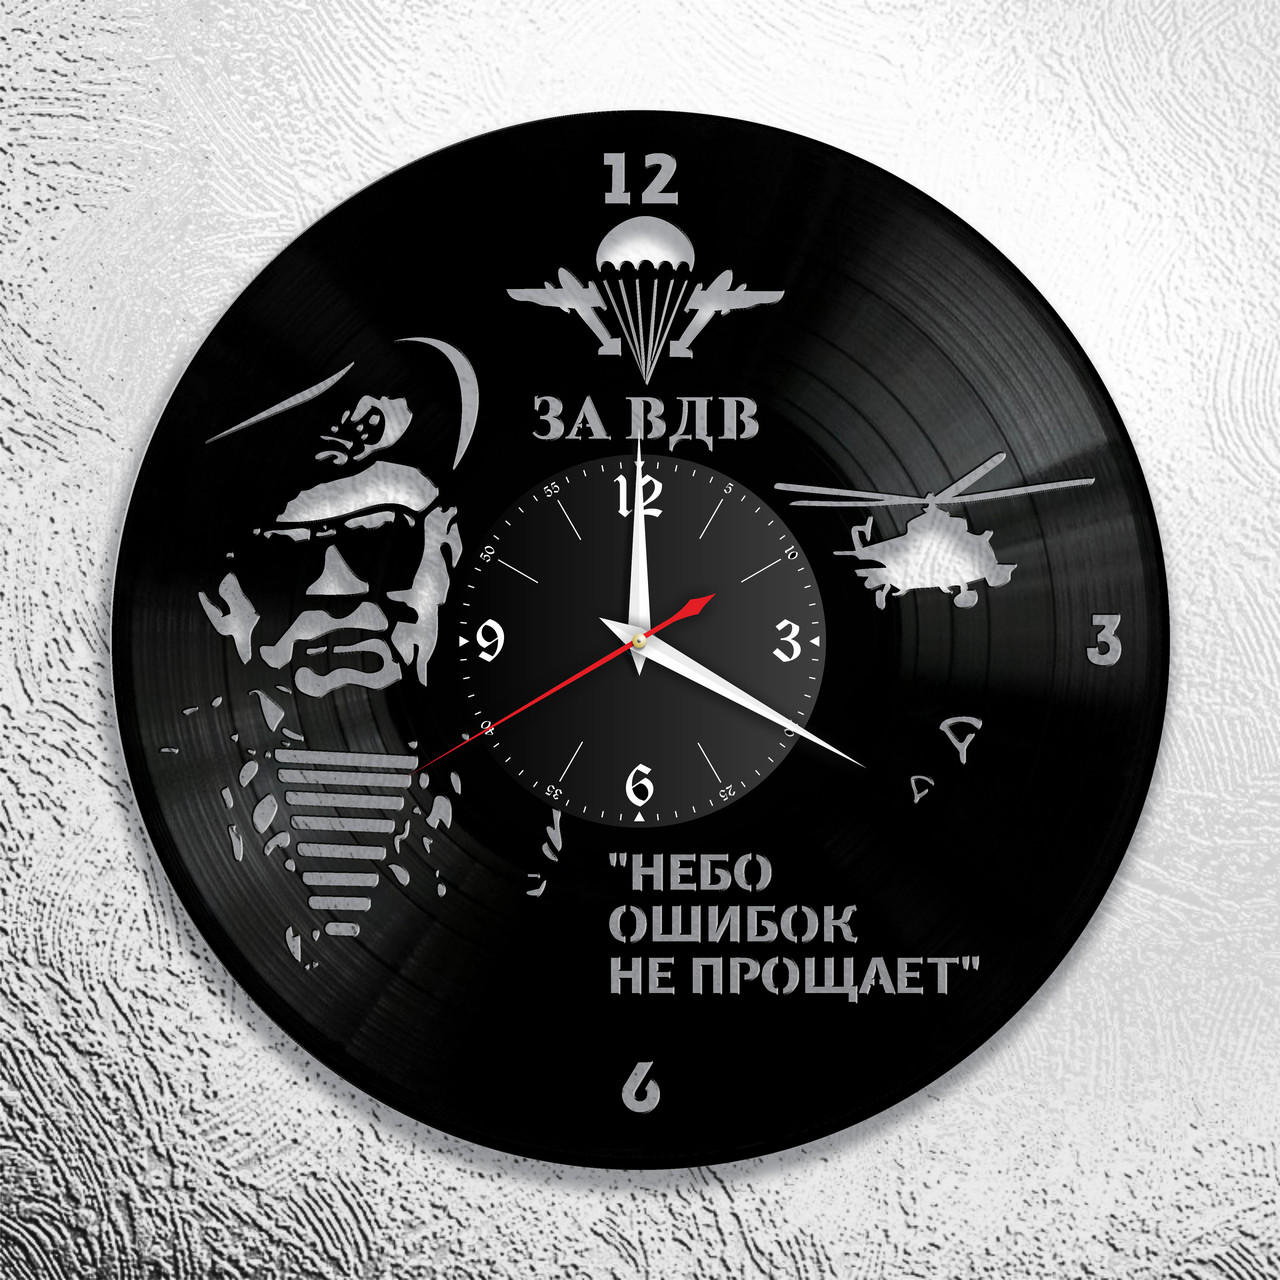 Оригинальные часы из виниловых пластинок  "ВДВ" версия 1